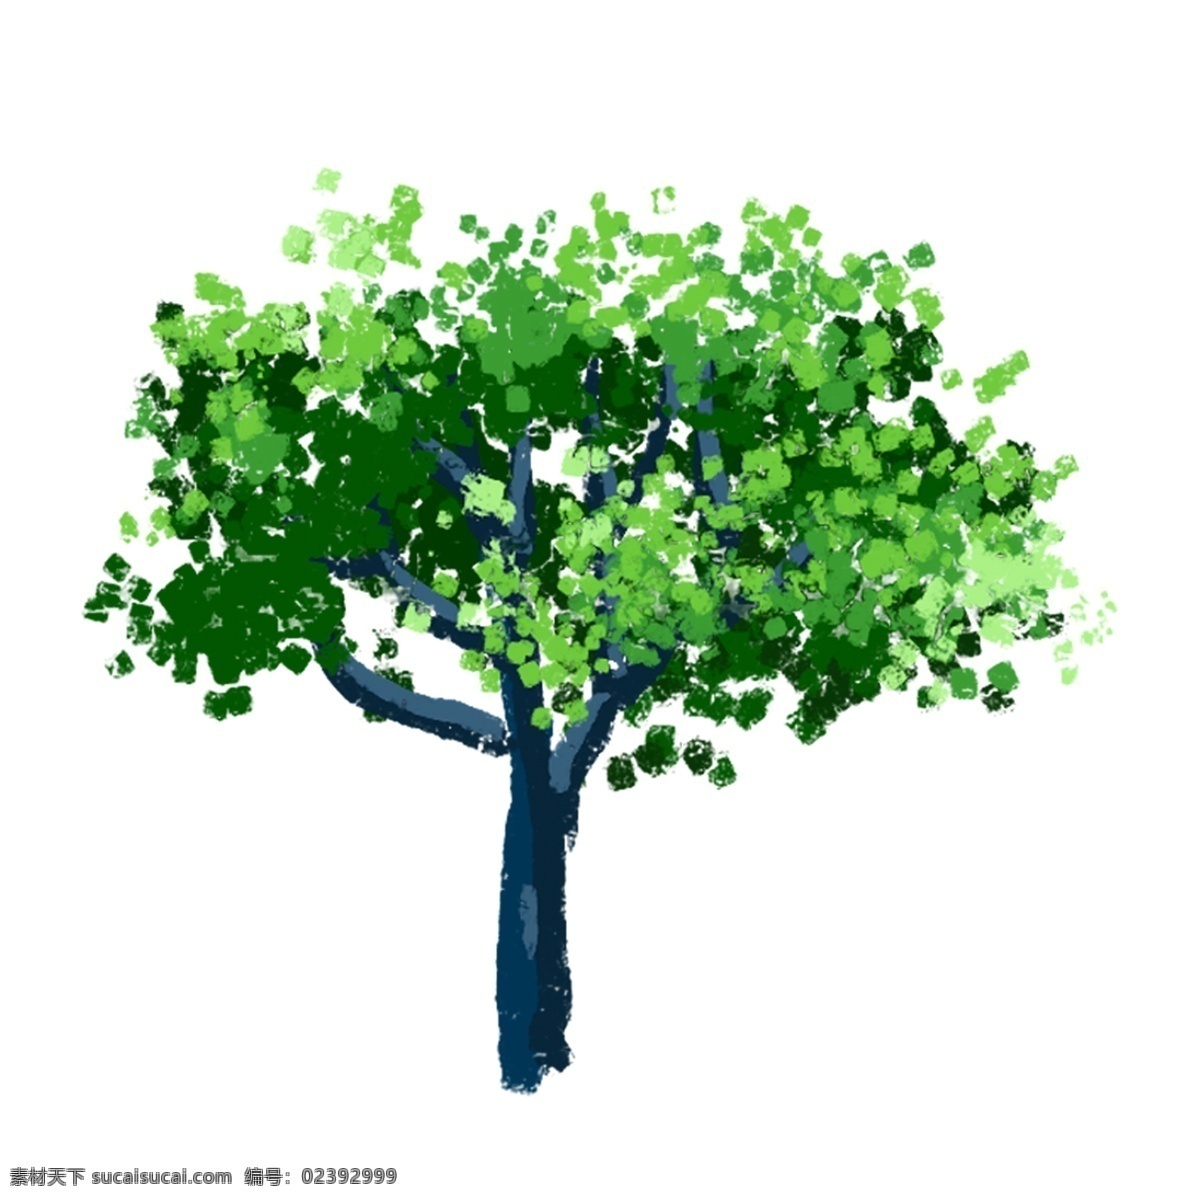 一个 精美 漂亮 的卡 通 手绘 绿色 大树 免 扣 卡通 免扣